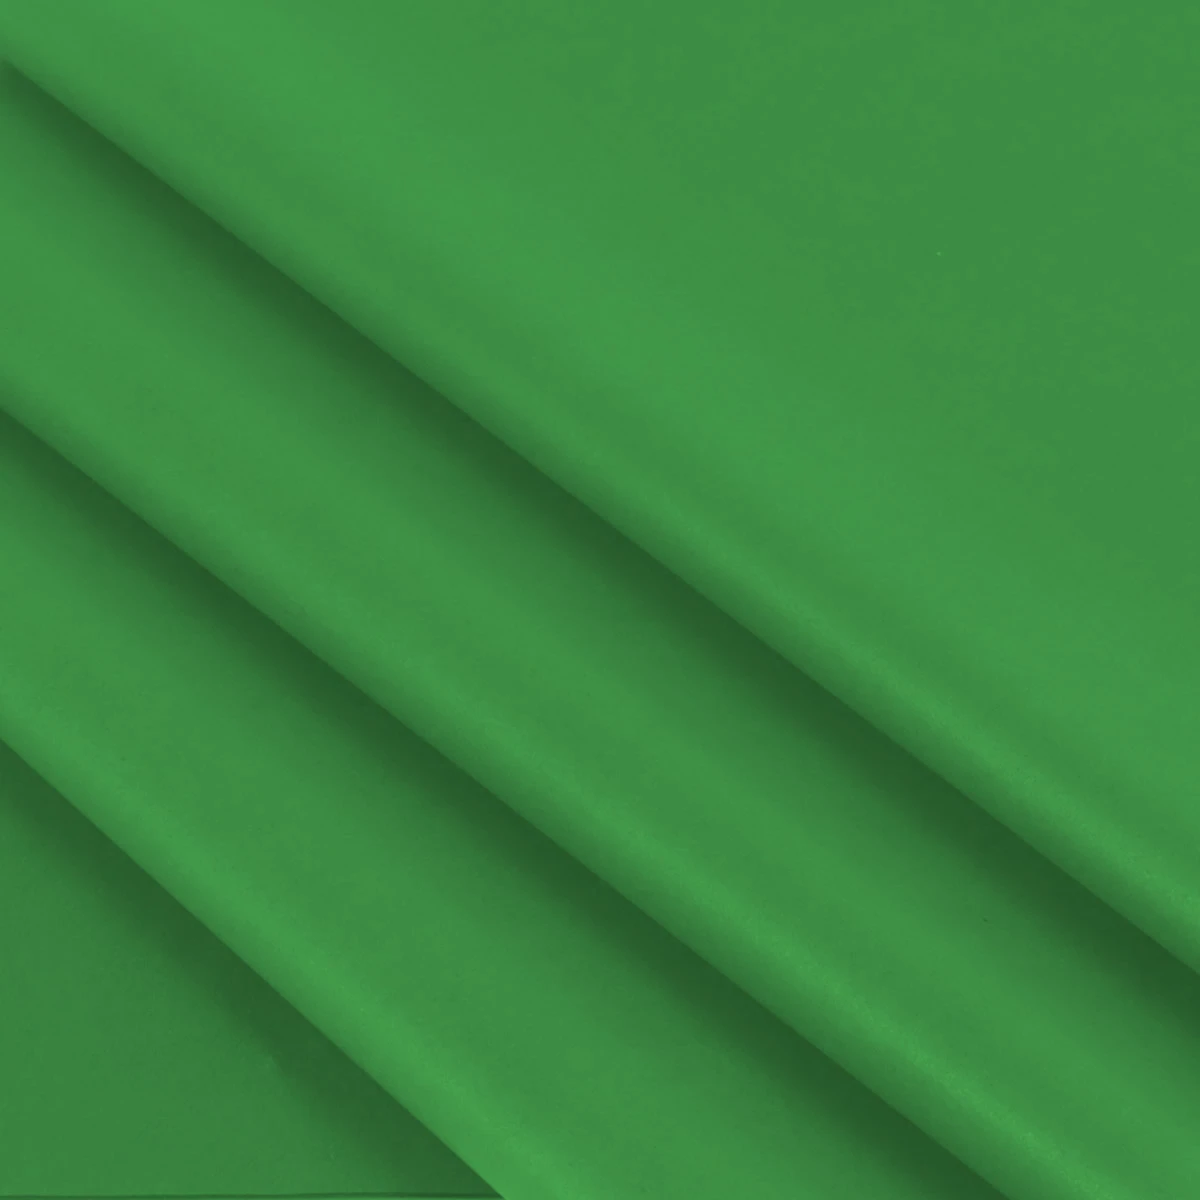 Vloeipapier jade groen 50 x 70 cm (480 vellen)